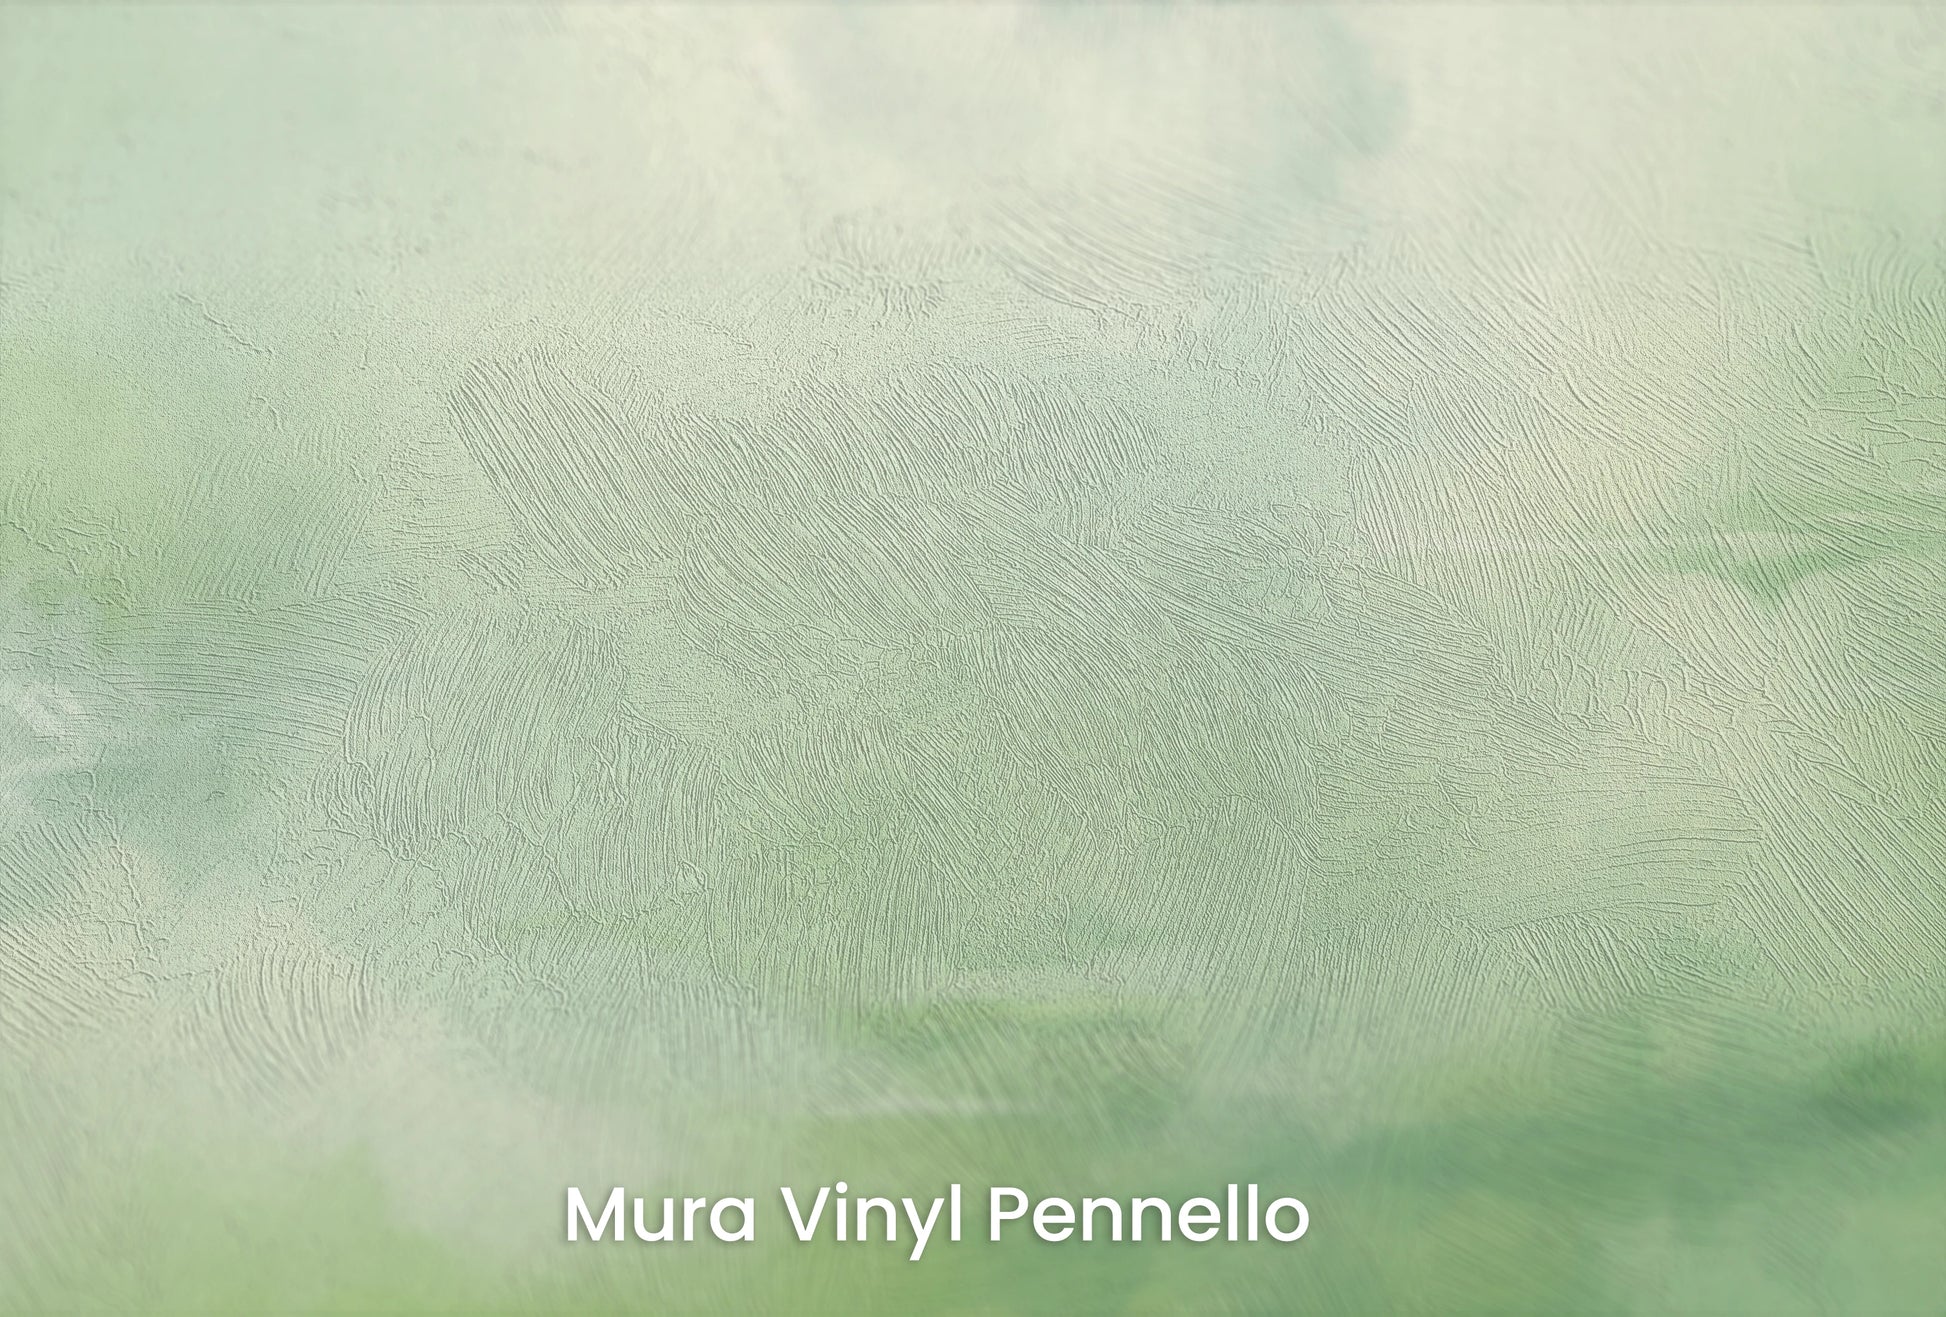 Zbliżenie na artystyczną fototapetę o nazwie Storm Herald na podłożu Mura Vinyl Pennello - faktura pociągnięć pędzla malarskiego.